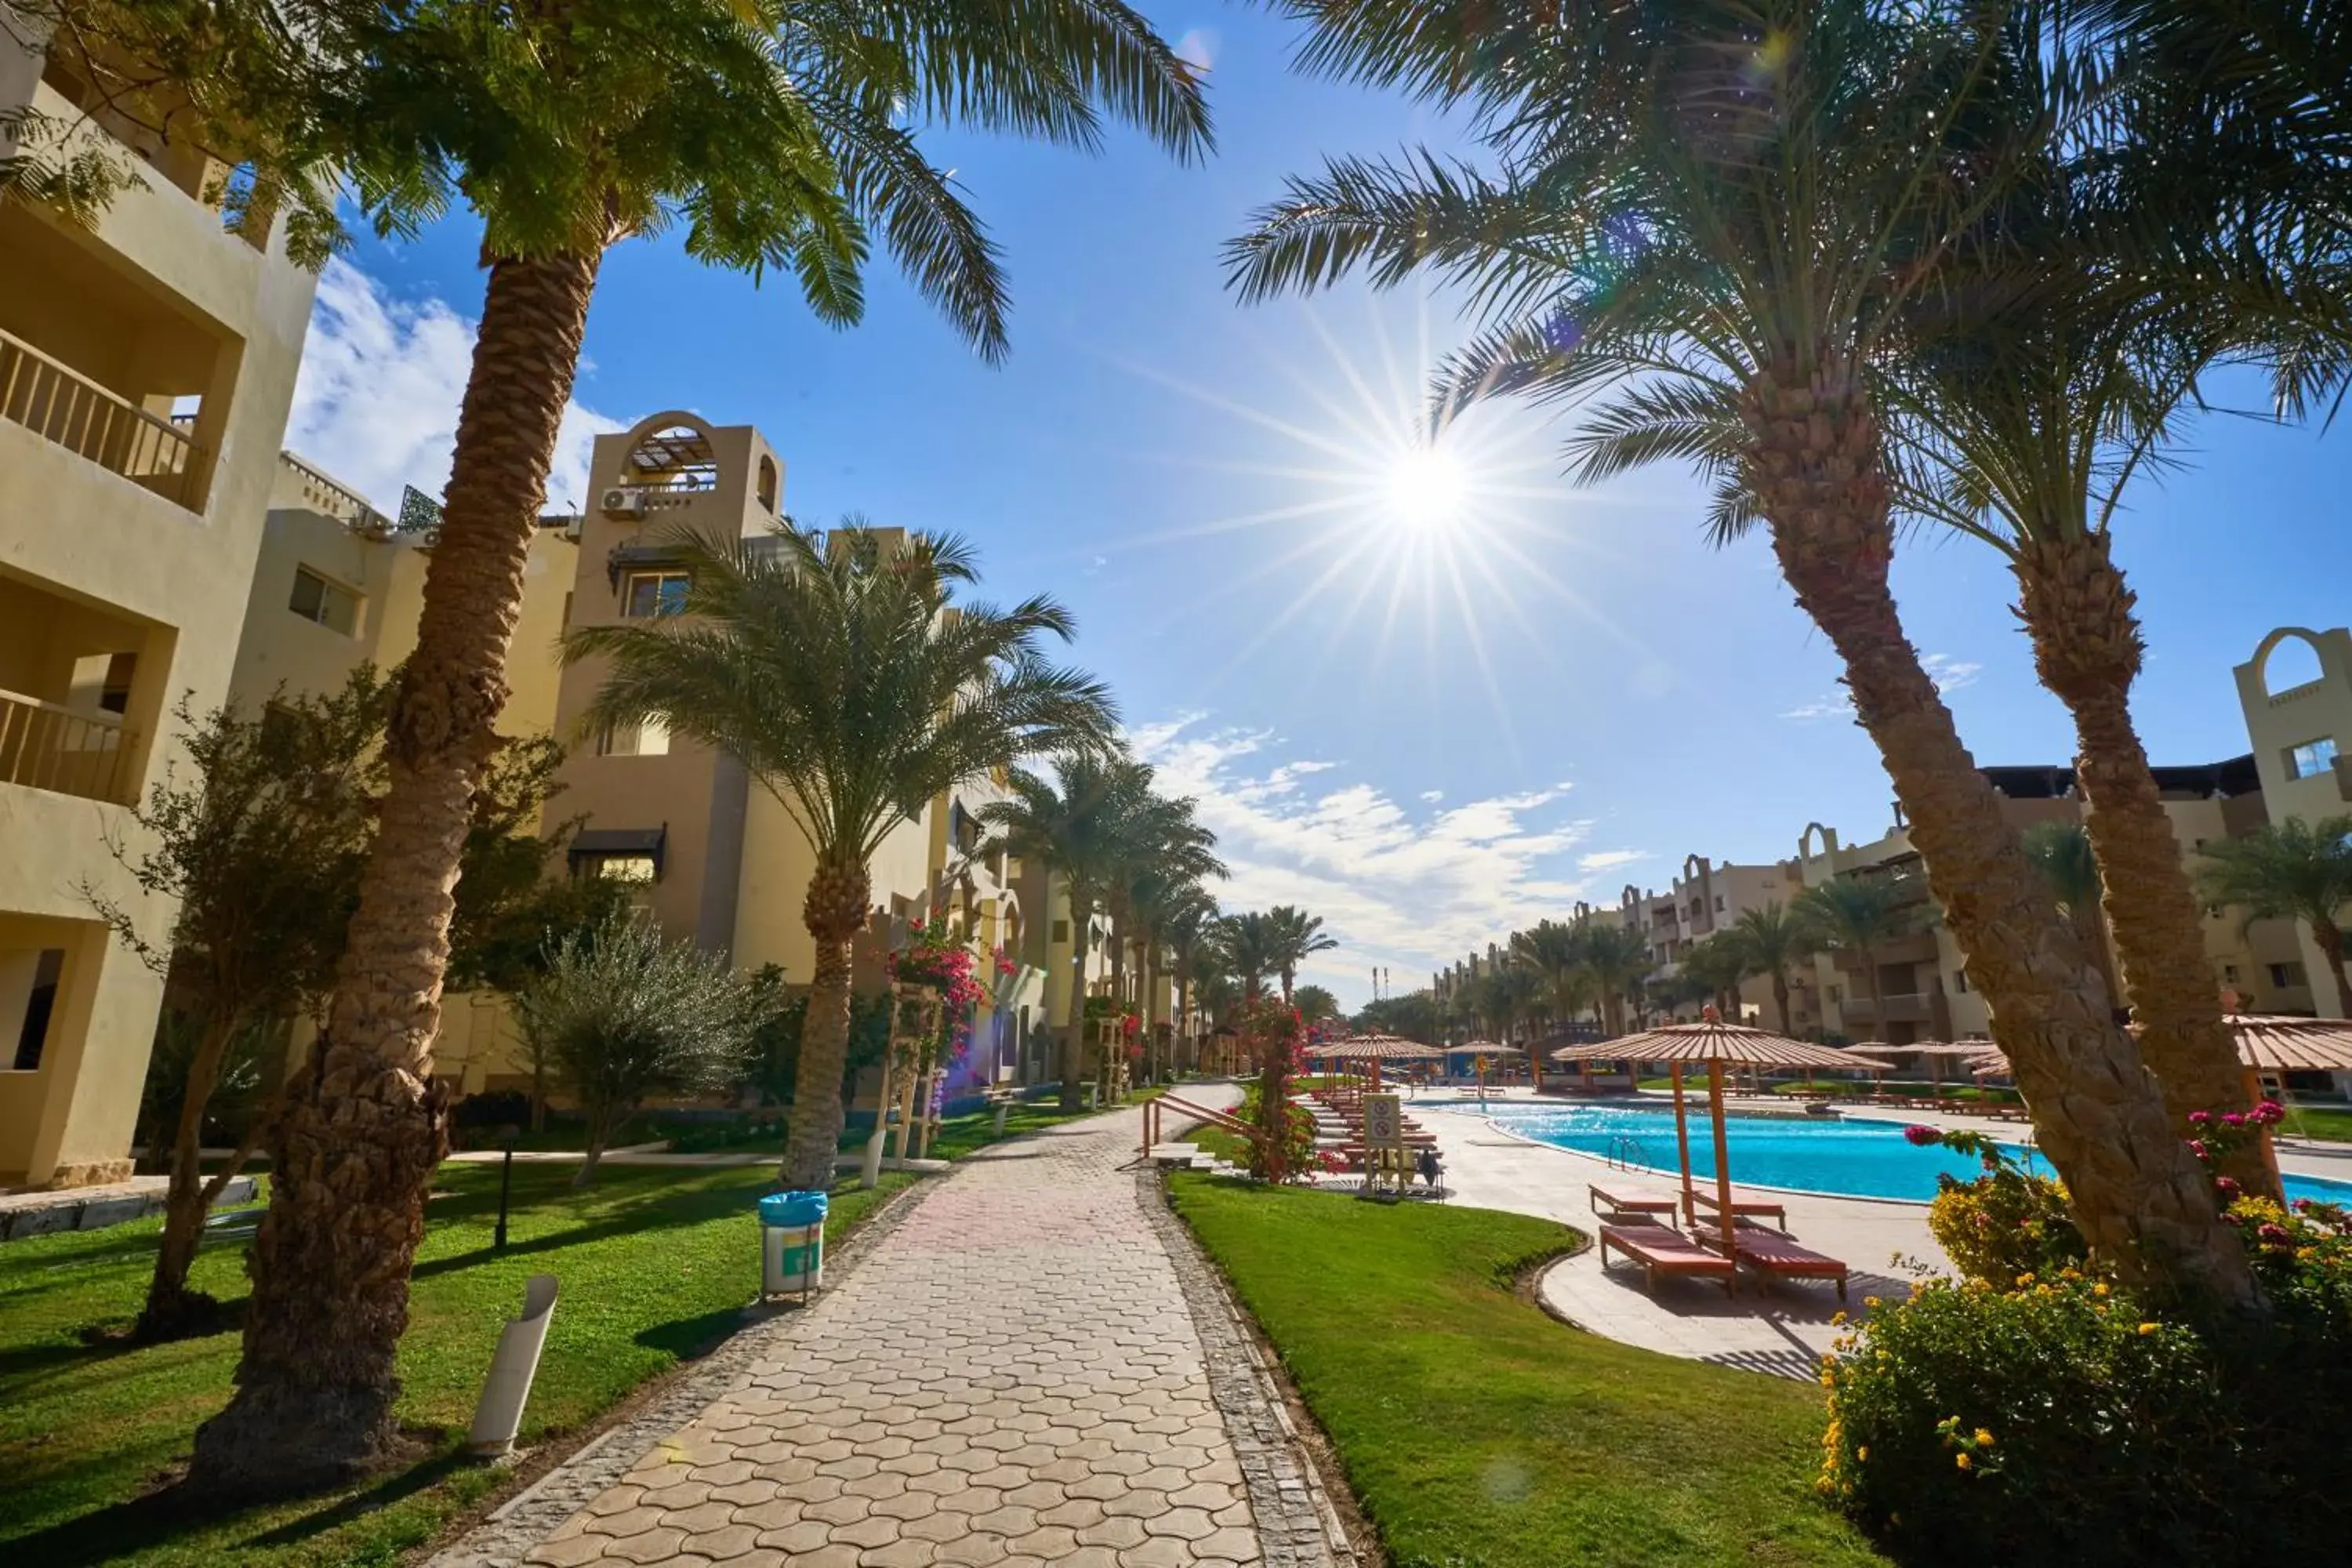 Property building, Swimming Pool in El Karma Beach Resort & Aqua Park - Hurghada